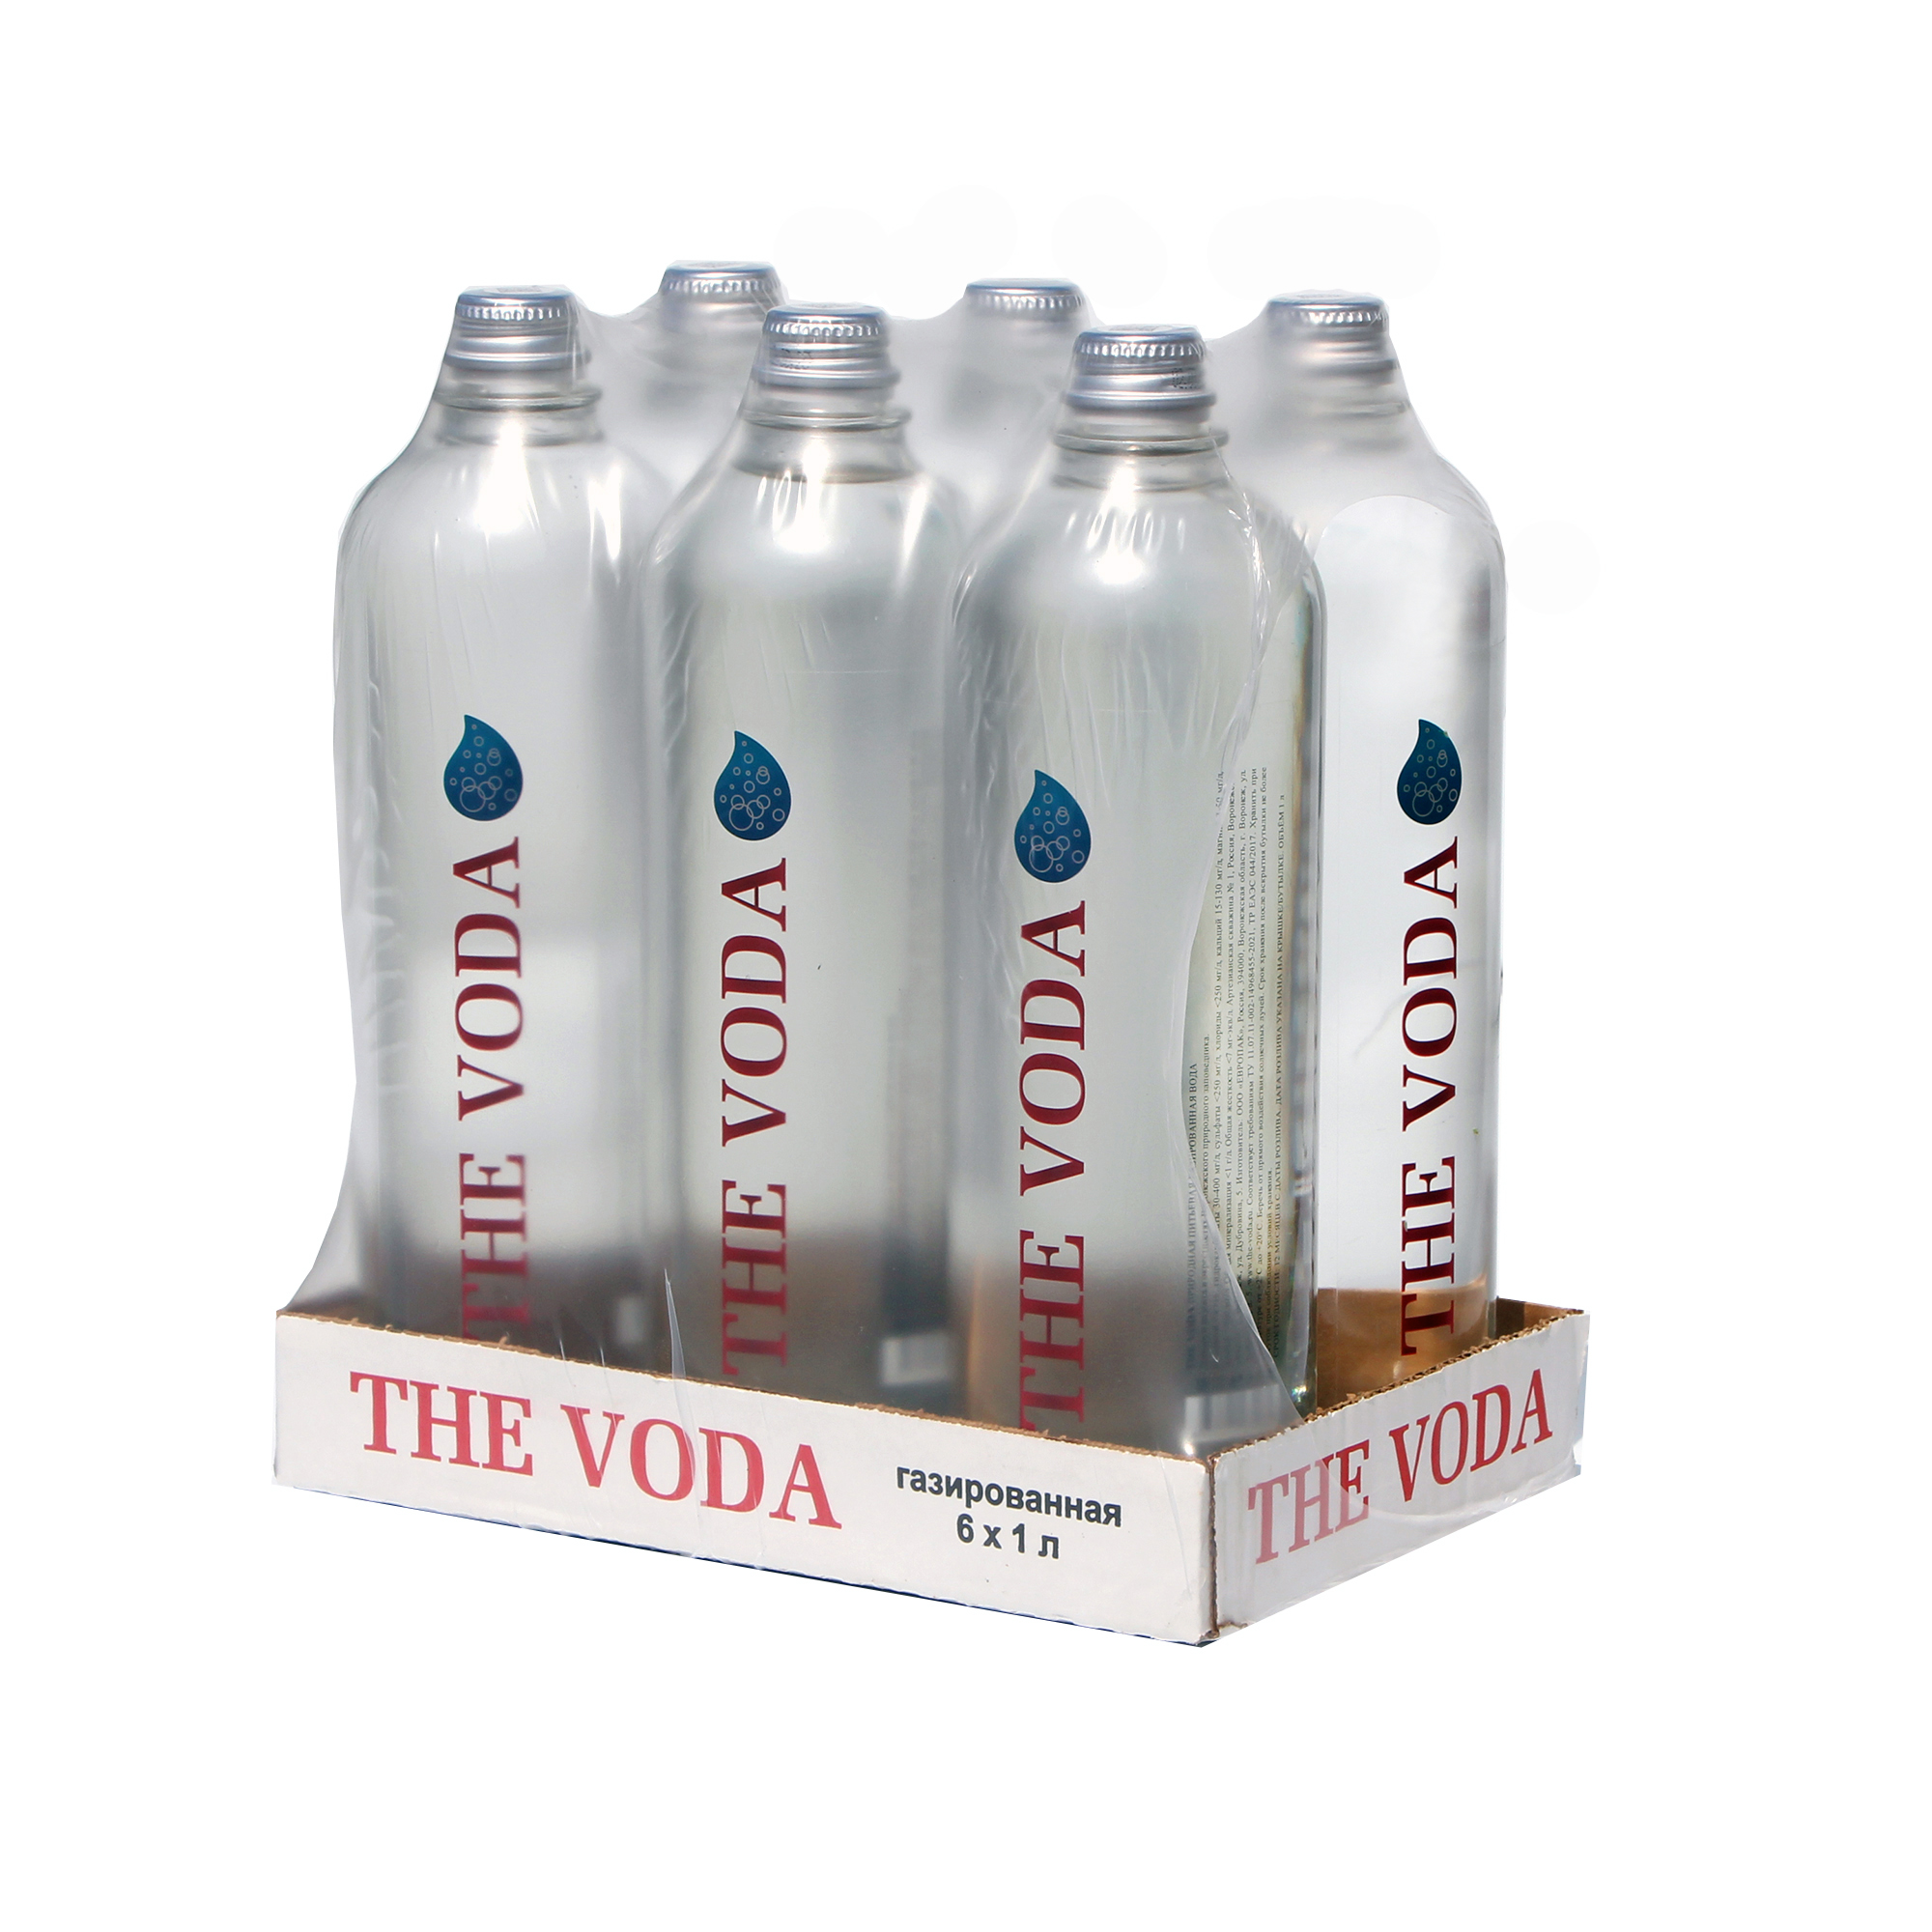 Вода природная питьевая THE V ODA газированная, стекло, 6 шт по 1 л